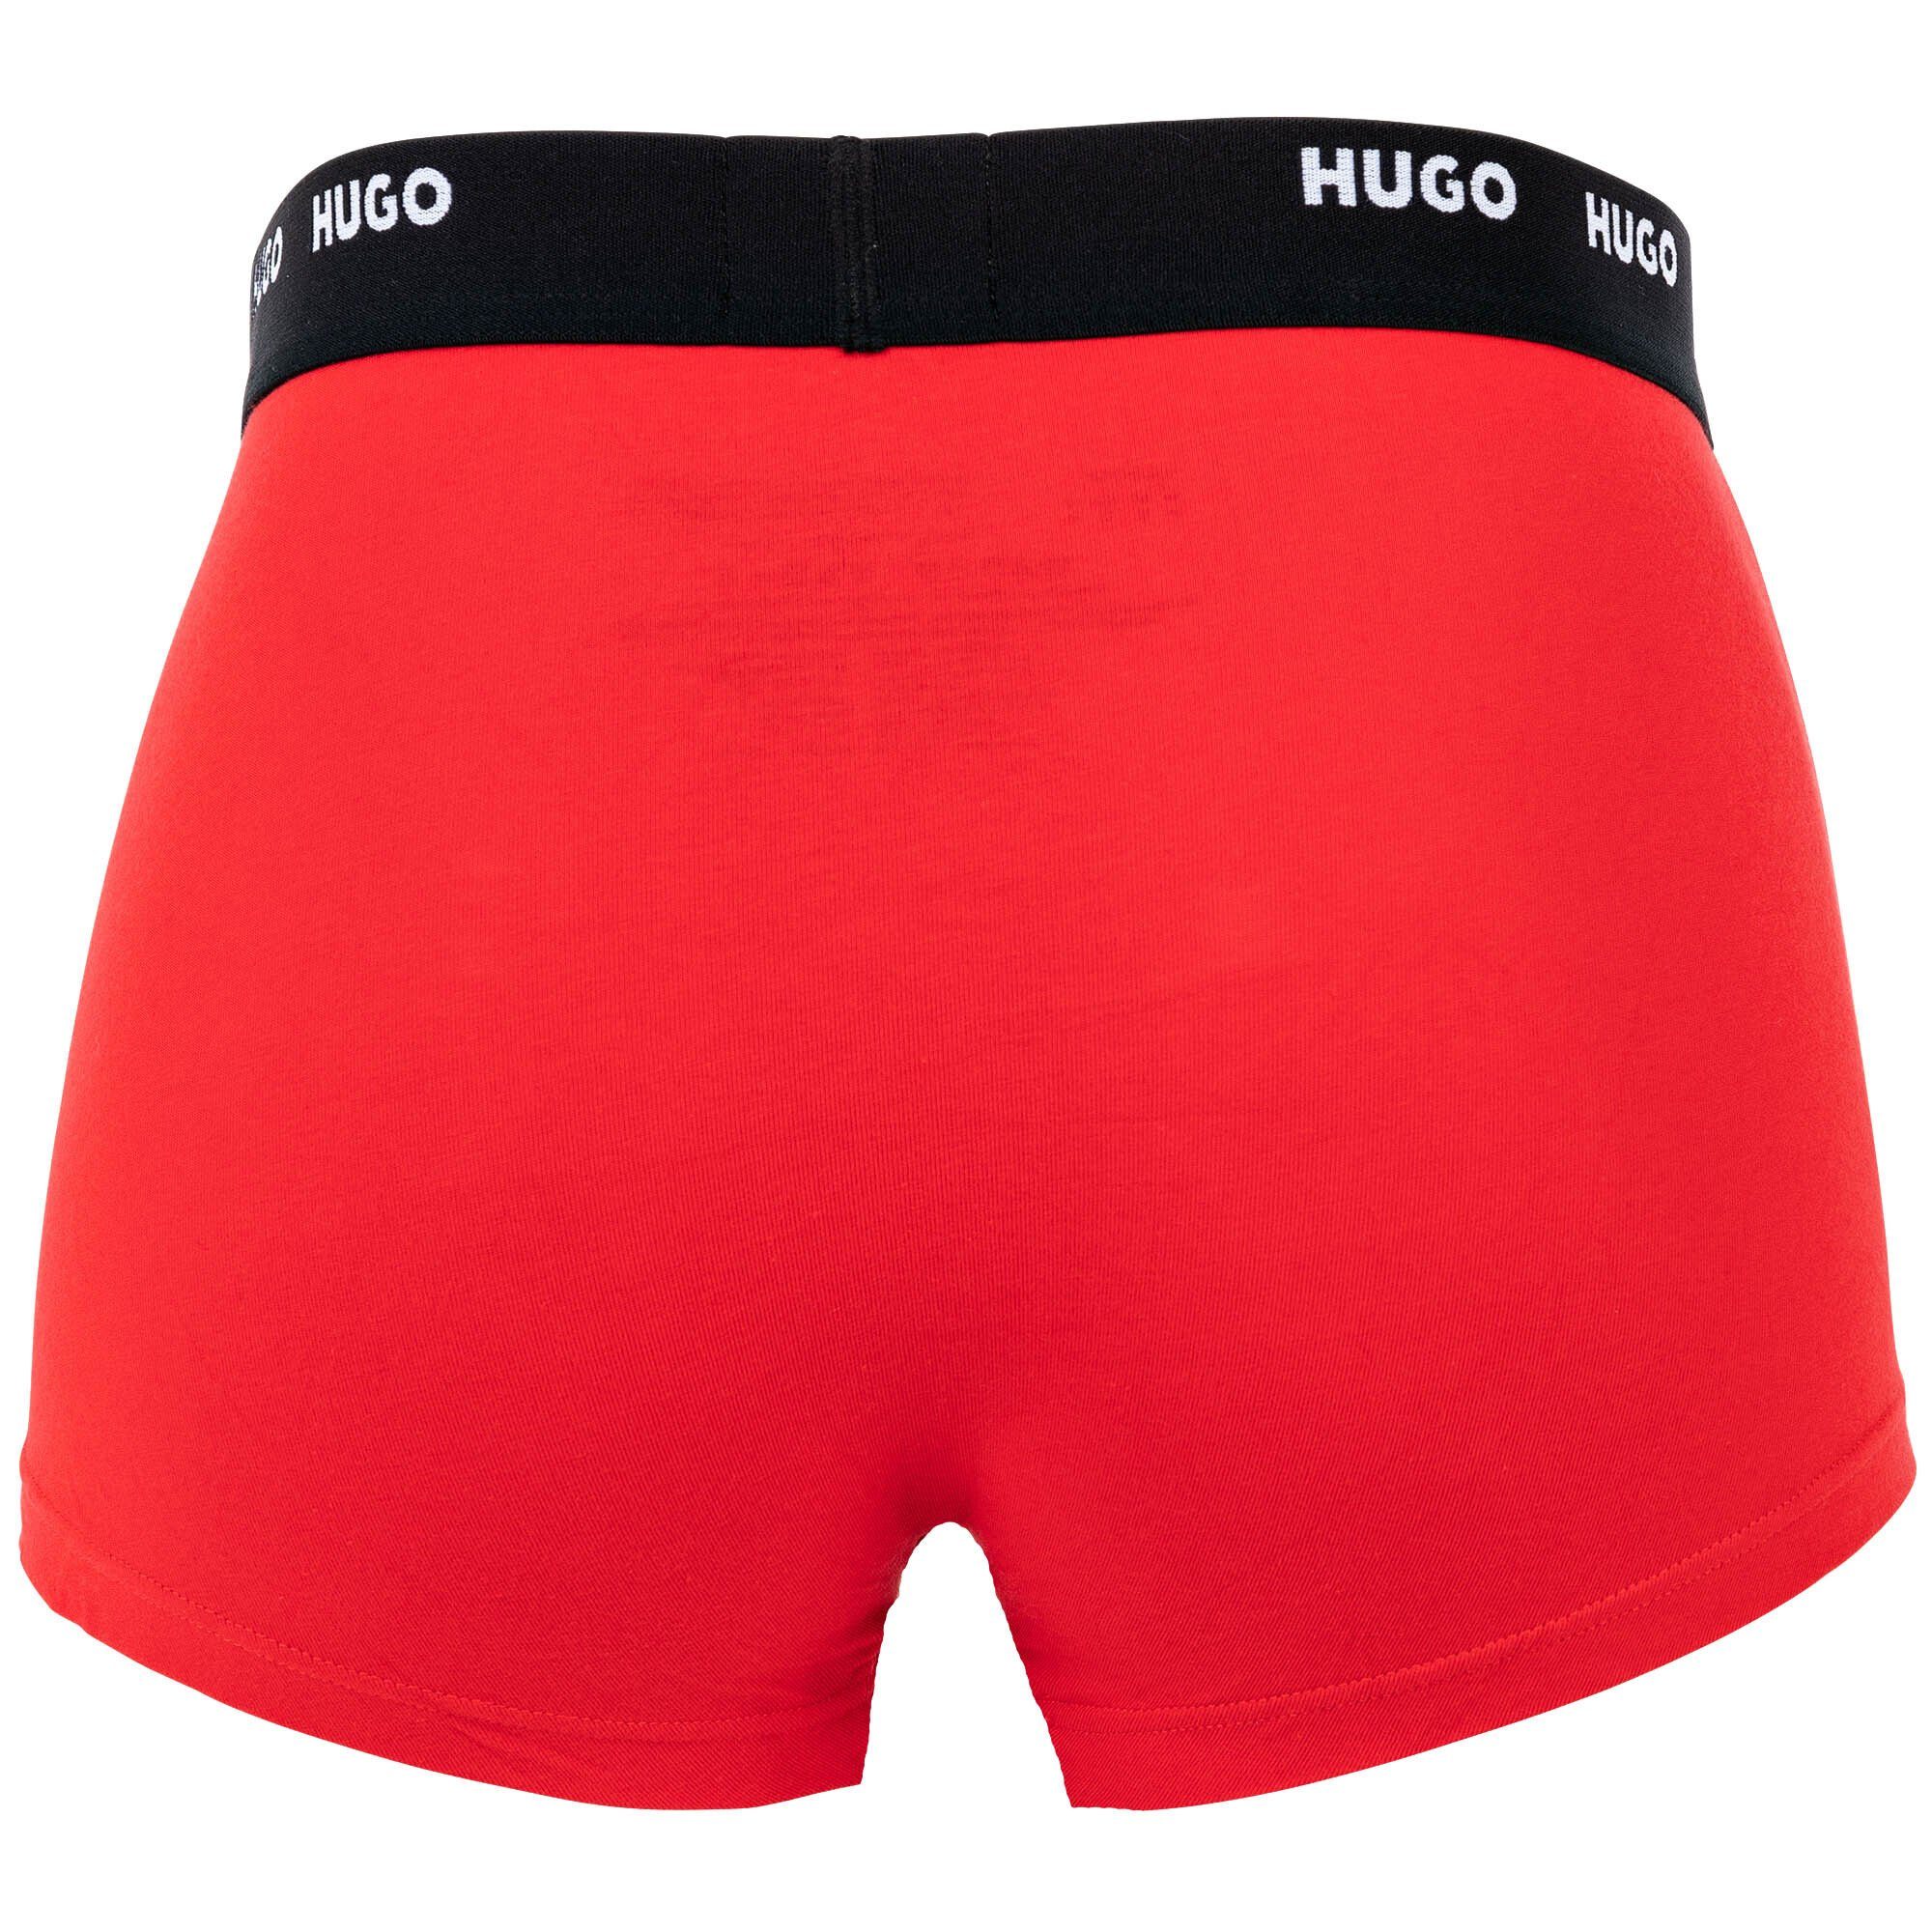 HUGO Boxer Pack Shorts, Boxer - Schwarz/Rot/Blau Trunks Herren Five 5er Pack